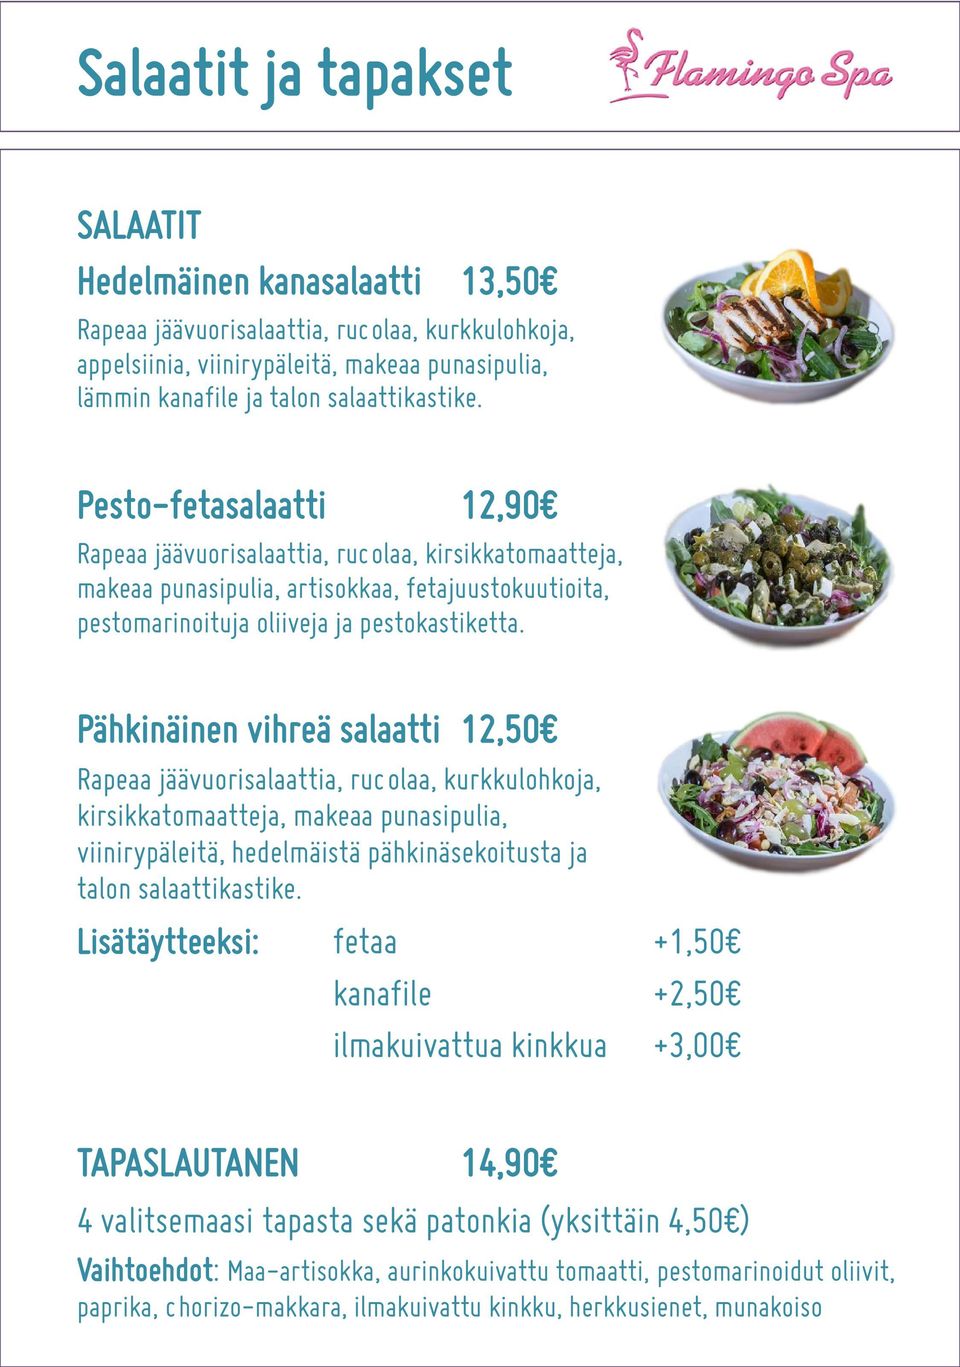 Pähkinäinen vihreä salaatti 12,50 Rapeaa jäävuorisalaattia, rucolaa, kurkkulohkoja, kirsikkatomaatteja, makeaa punasipulia, viinirypäleitä, hedelmäistä pähkinäsekoitusta ja talon salaattikastike.